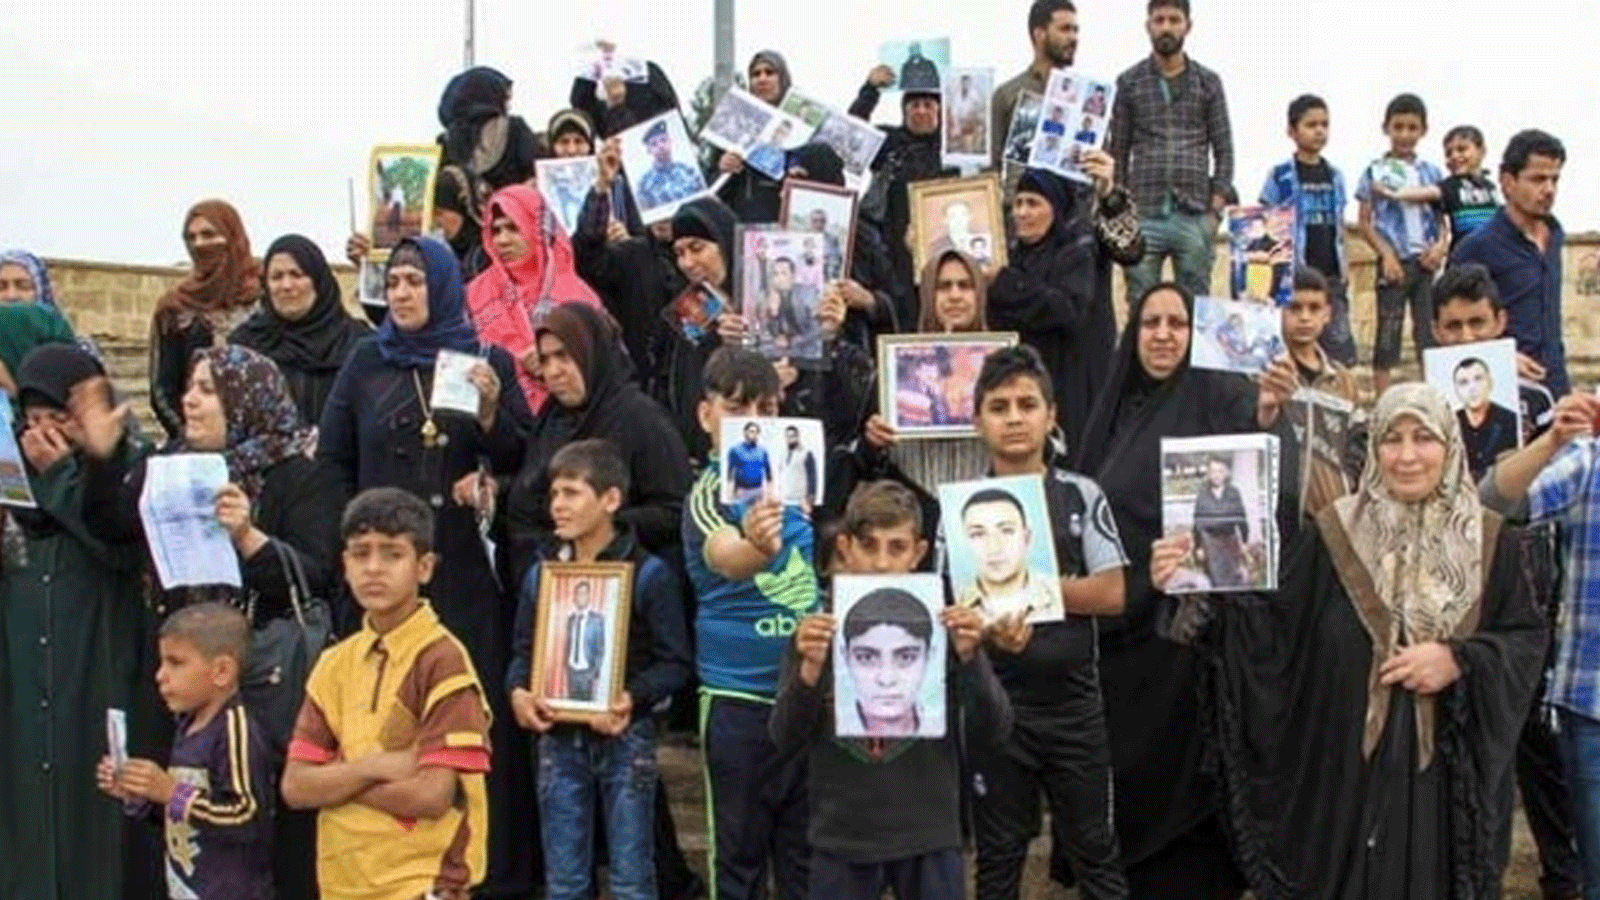 عائلات عراقية تتظاهر مطالبة الحكومة بالكشف عن مصير اينائها المختطفين من قبل المليشيات المسلحة (تويتر)